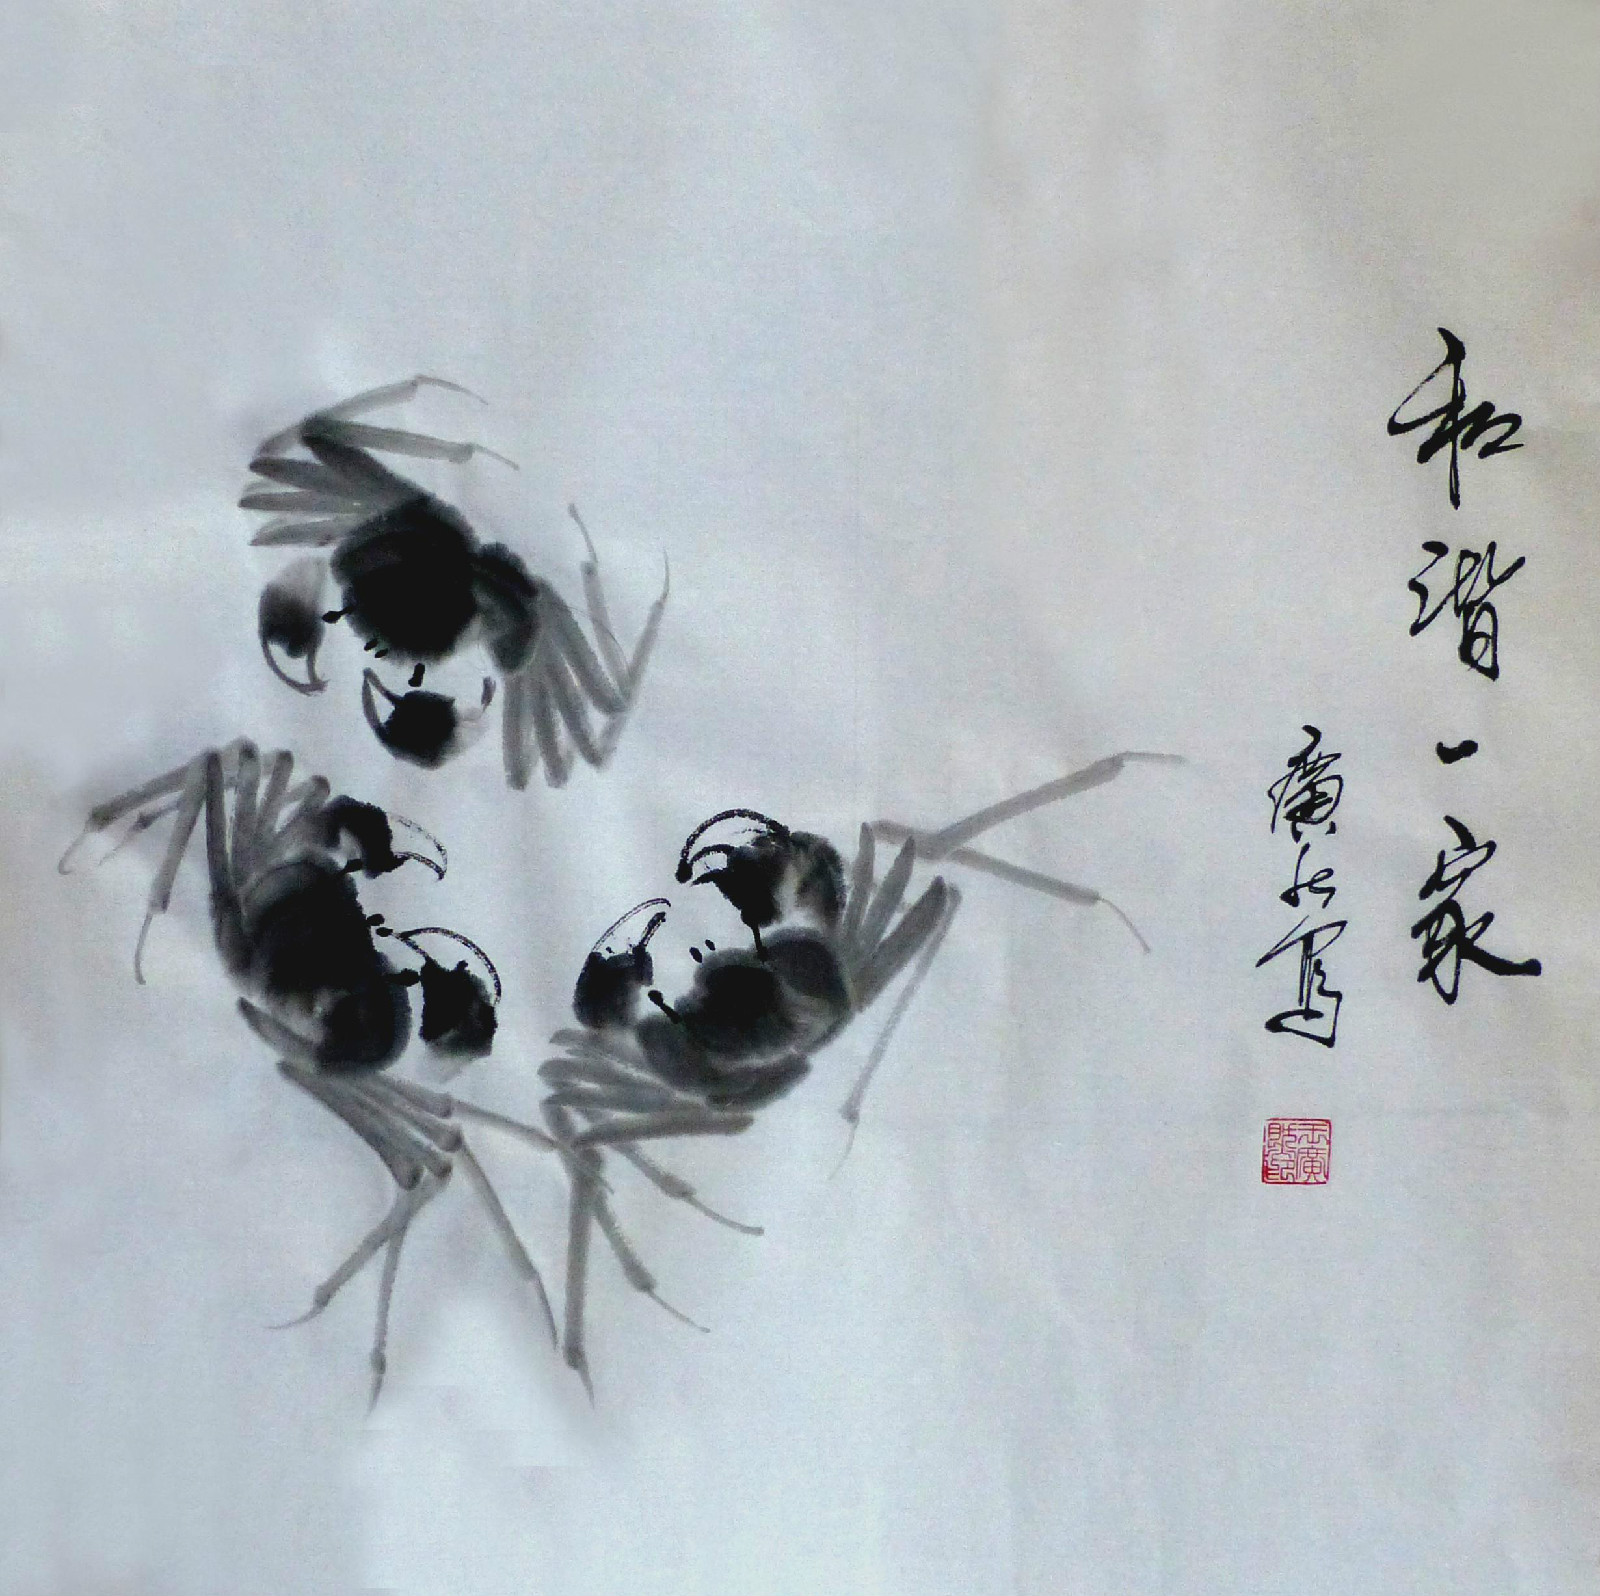 王廣然創作的會意水墨畫《和諧一家》